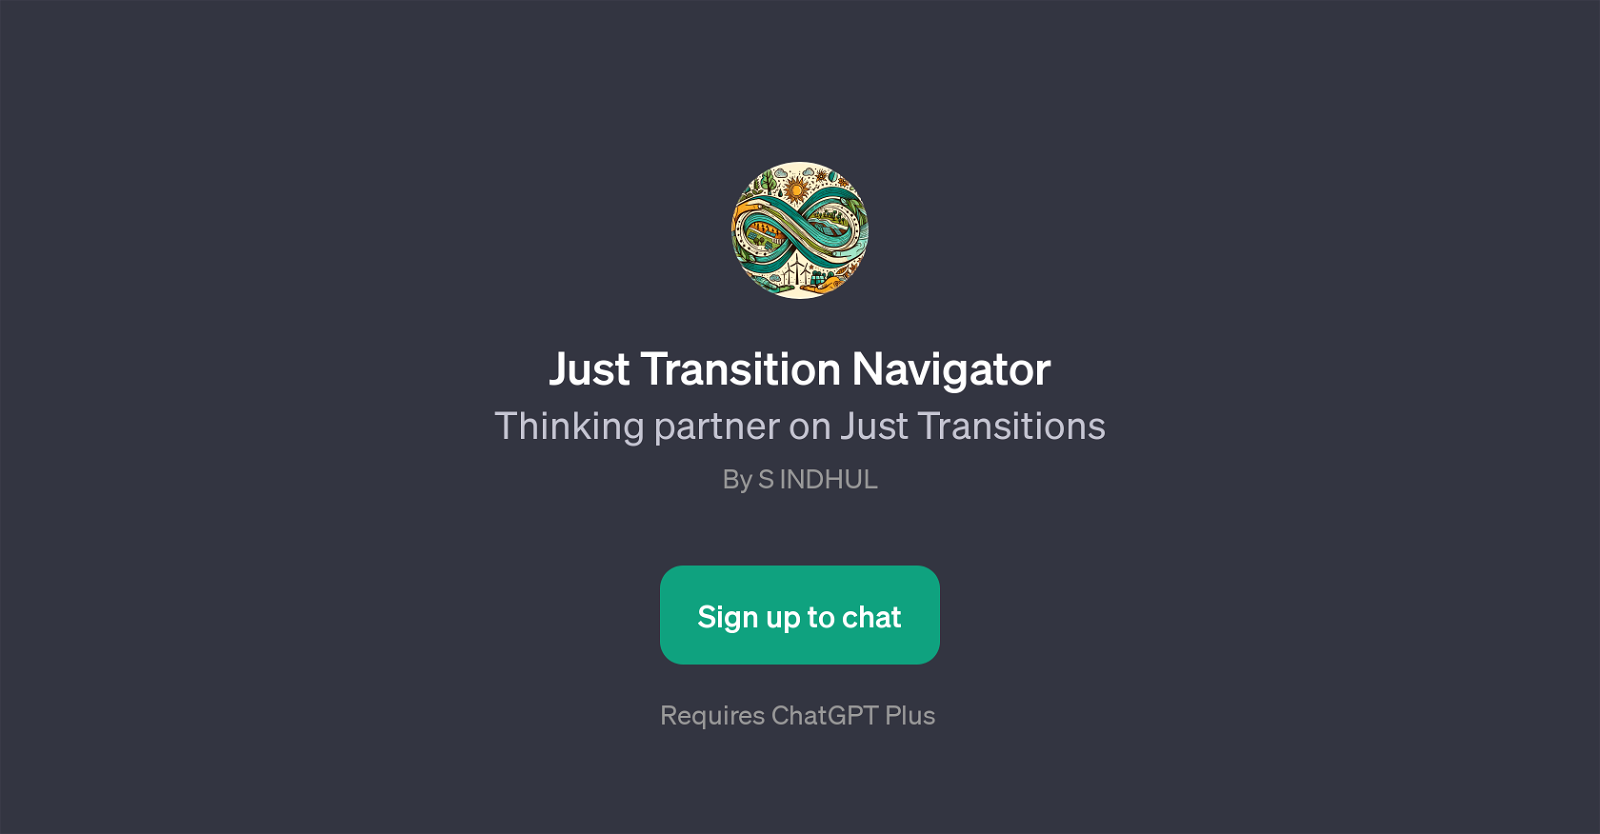 Just Transition Navigator website